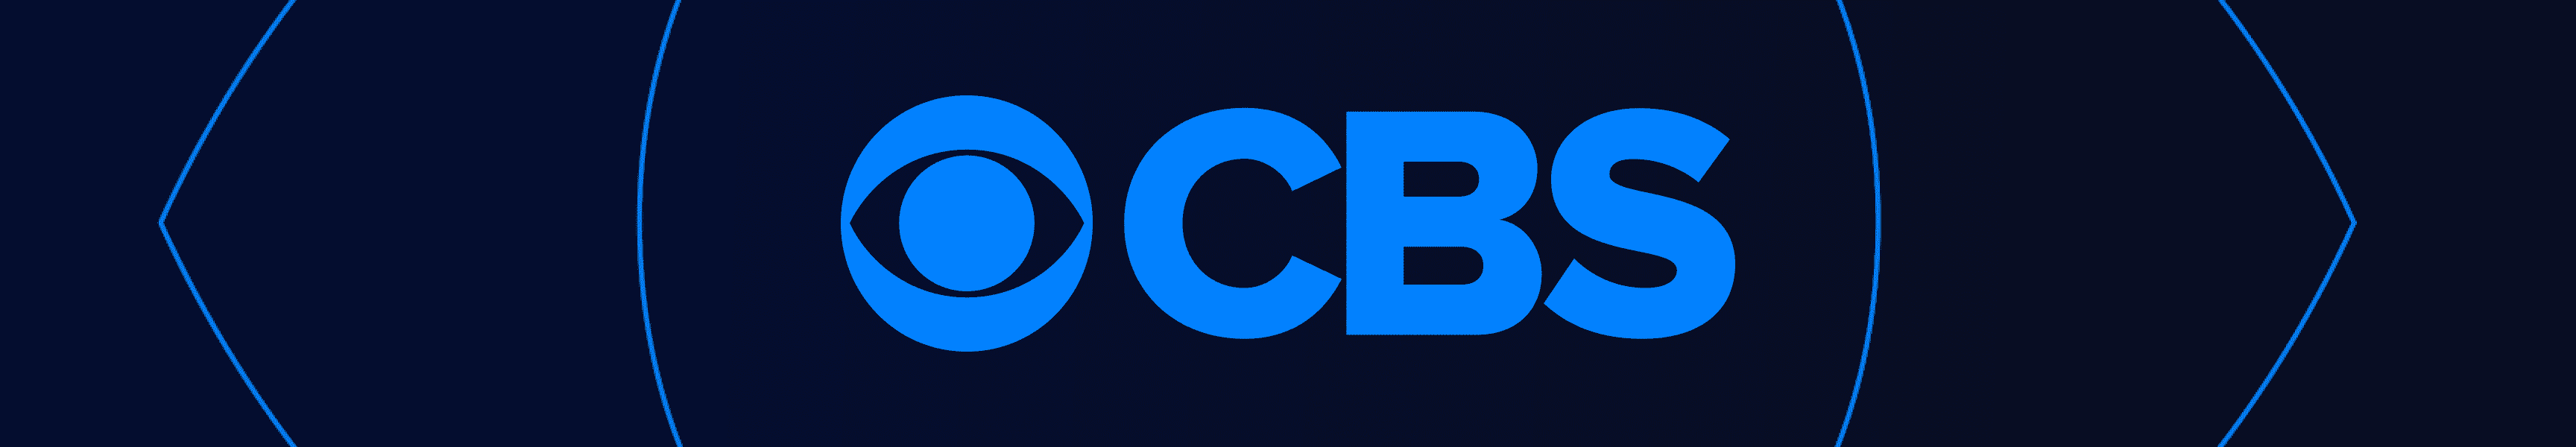 CBS Entertainment Office Supplies